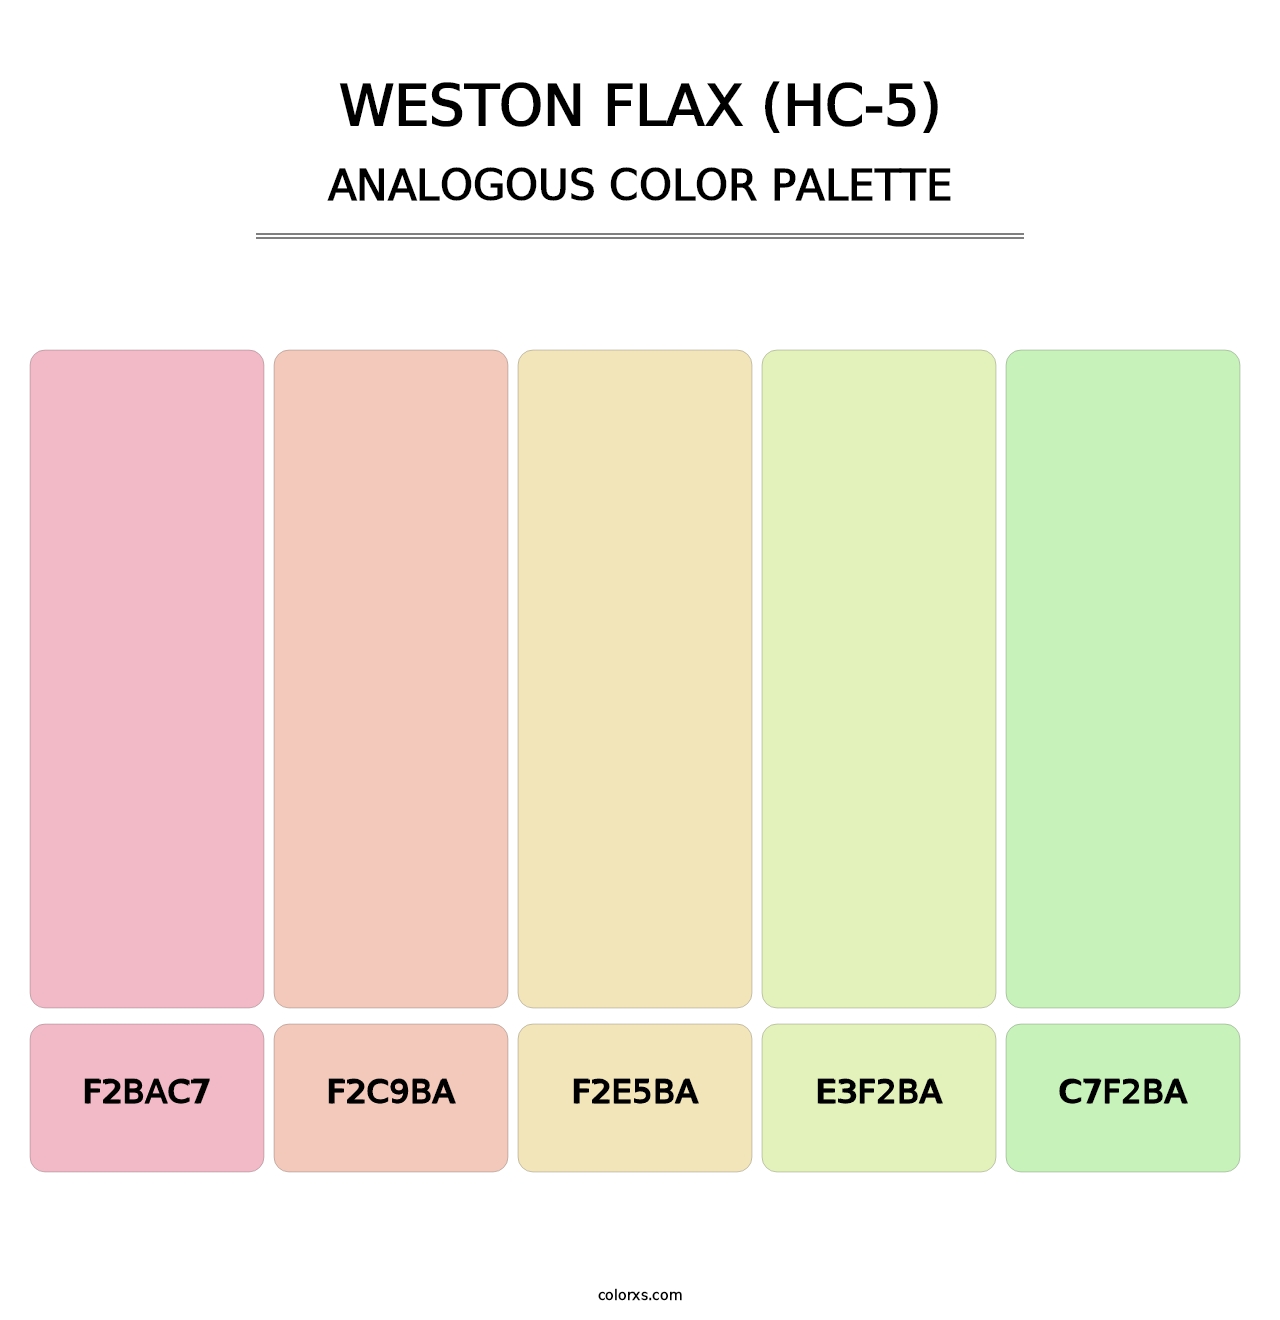 Weston Flax (HC-5) - Analogous Color Palette